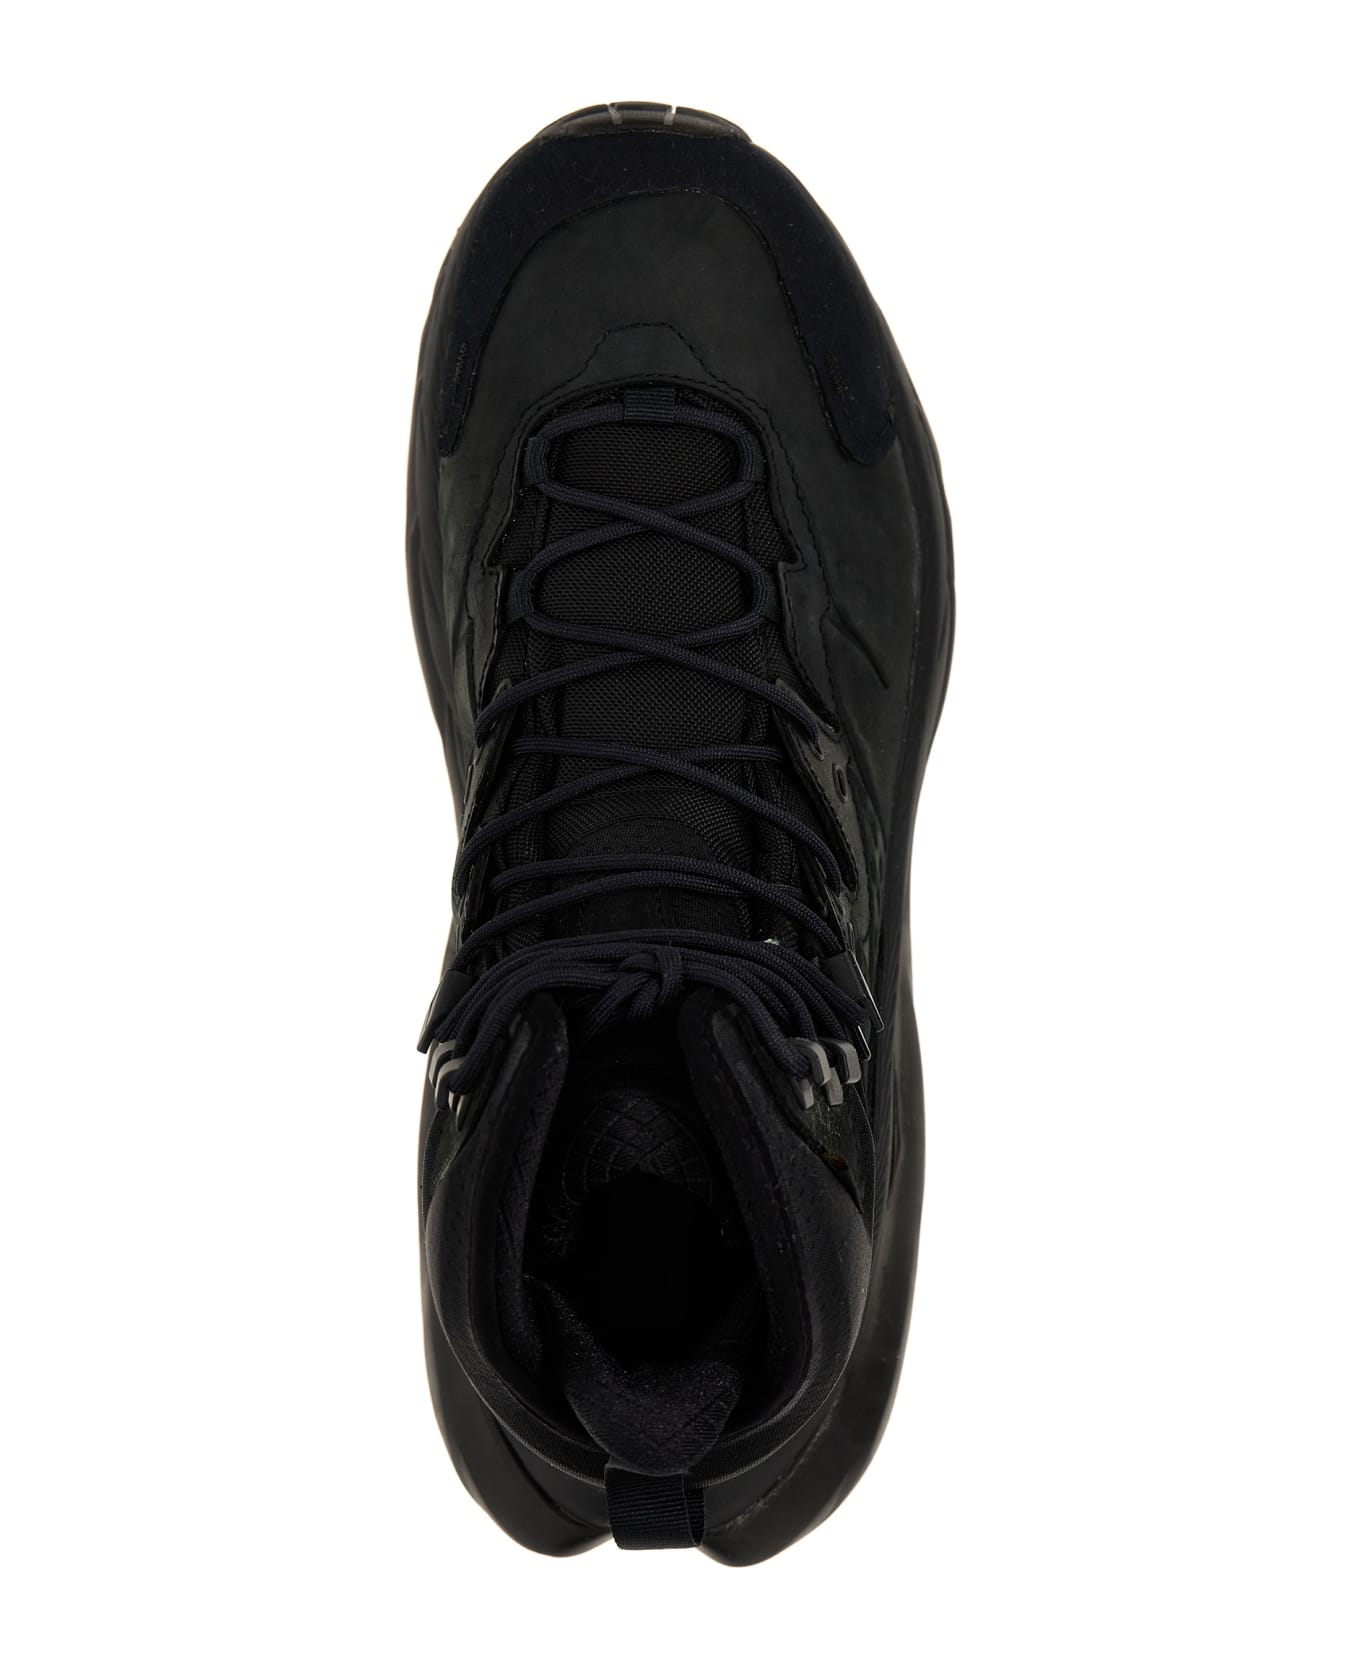 Hoka One One 'kaha 2 Gtx' Sneakers - Black  